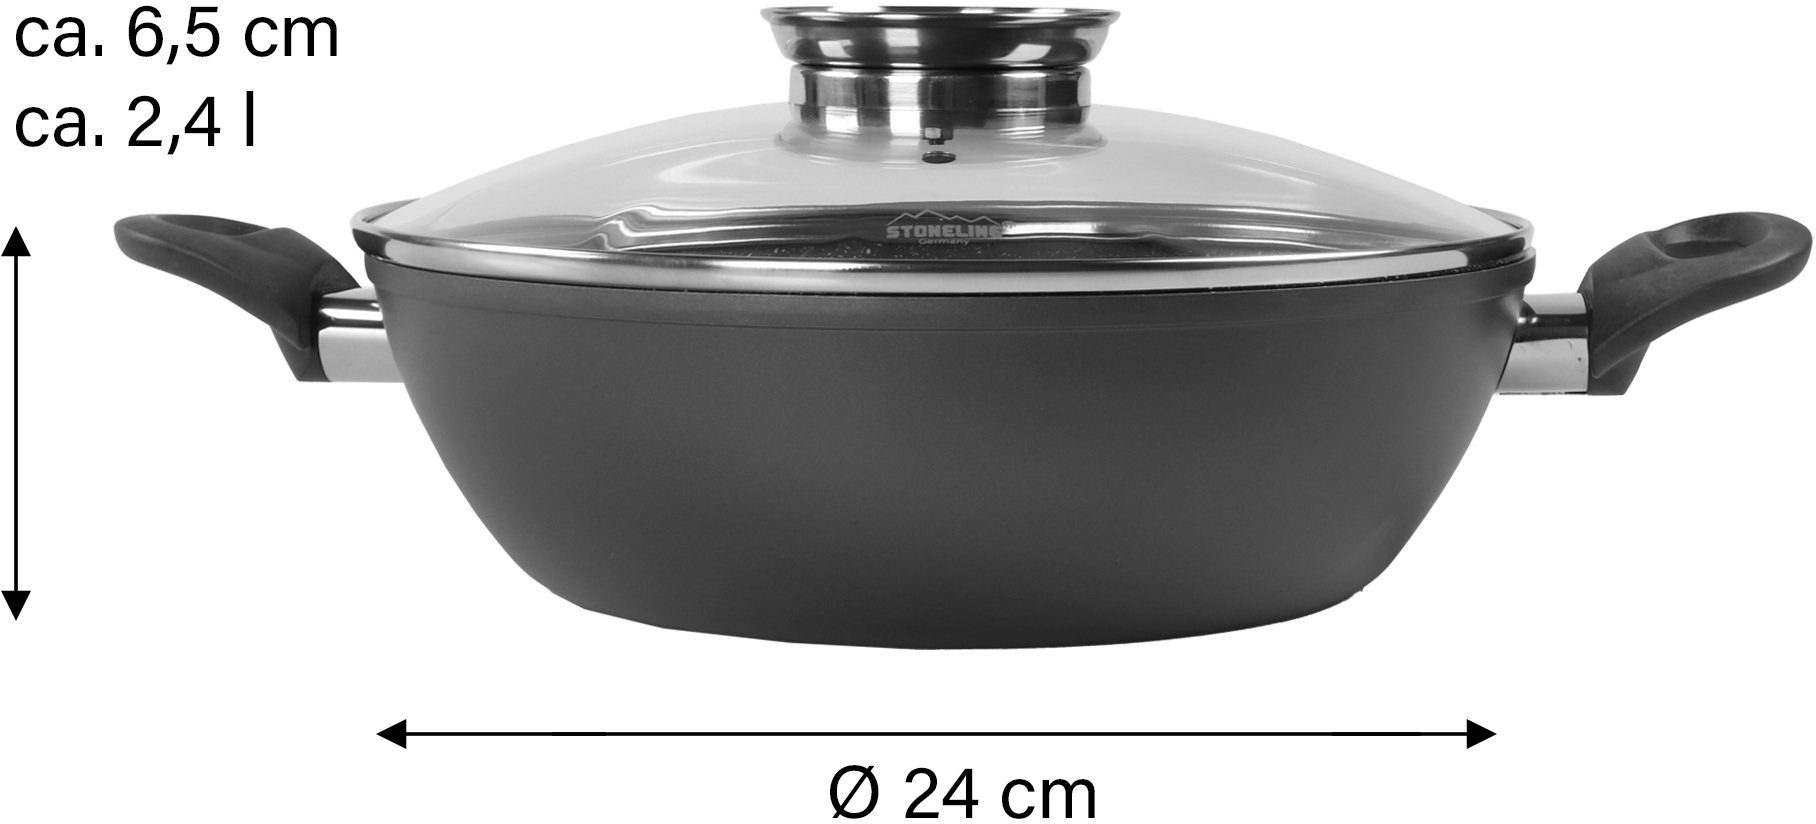 waterval distillatie ozon STONELINE Serveerpan Ø 24 cm, met aromaknop in de deksel, inductie  (1-delig) online kopen | OTTO